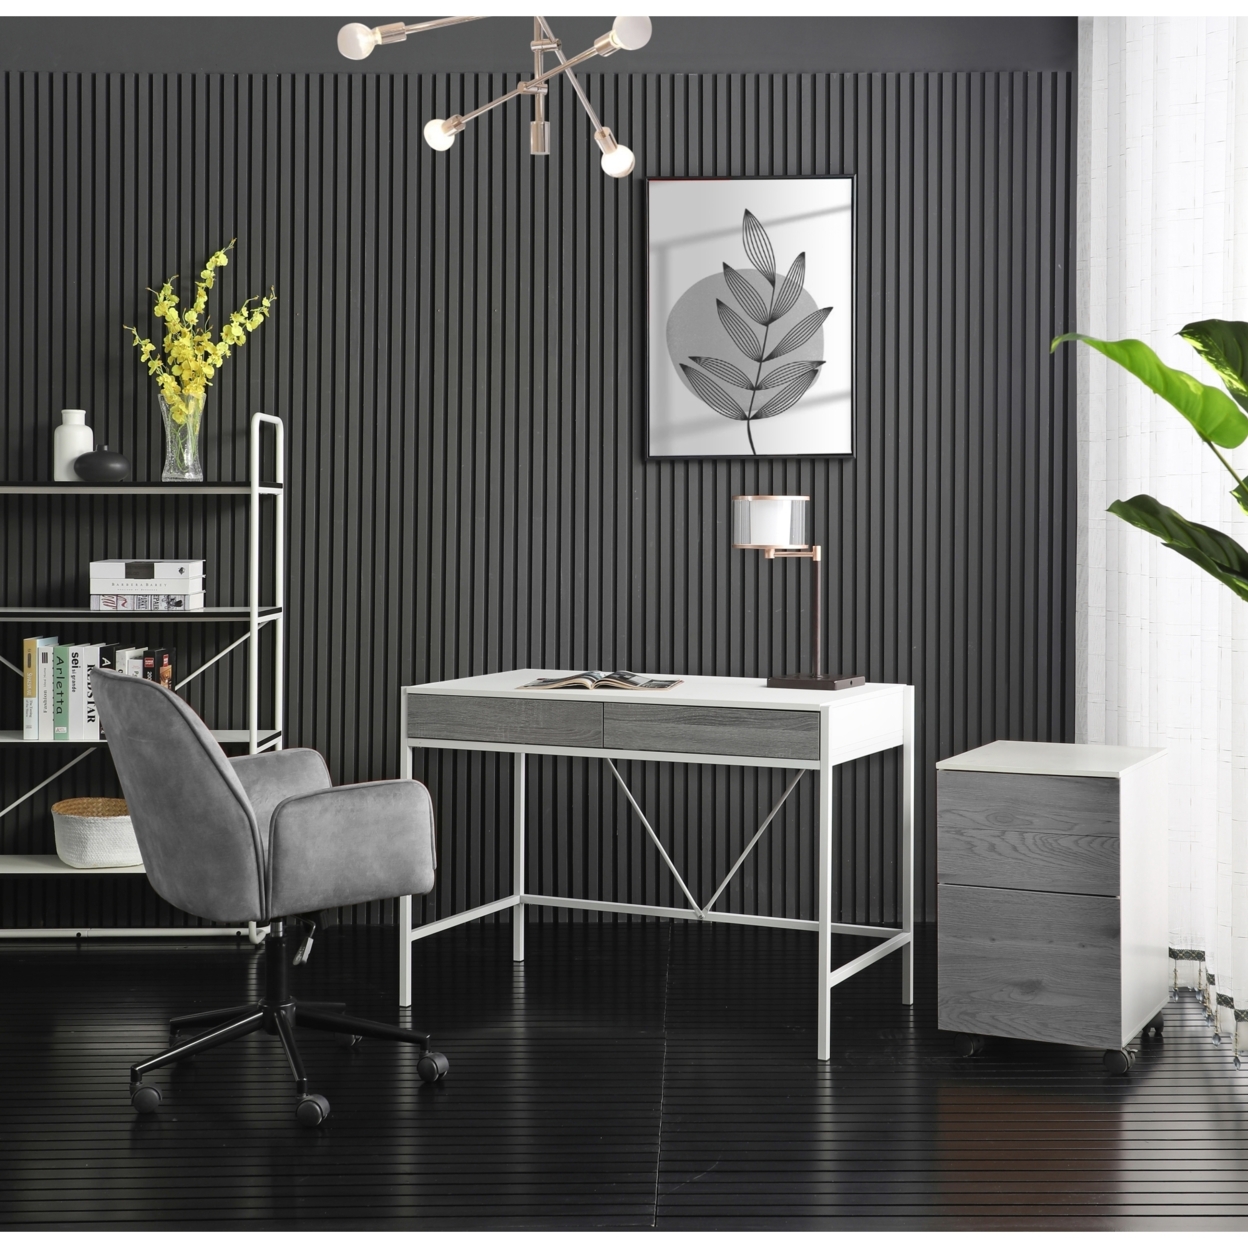 Asiya Desk-2 Storage Drawers-Poweder Coated Steel Legs - - white/grey